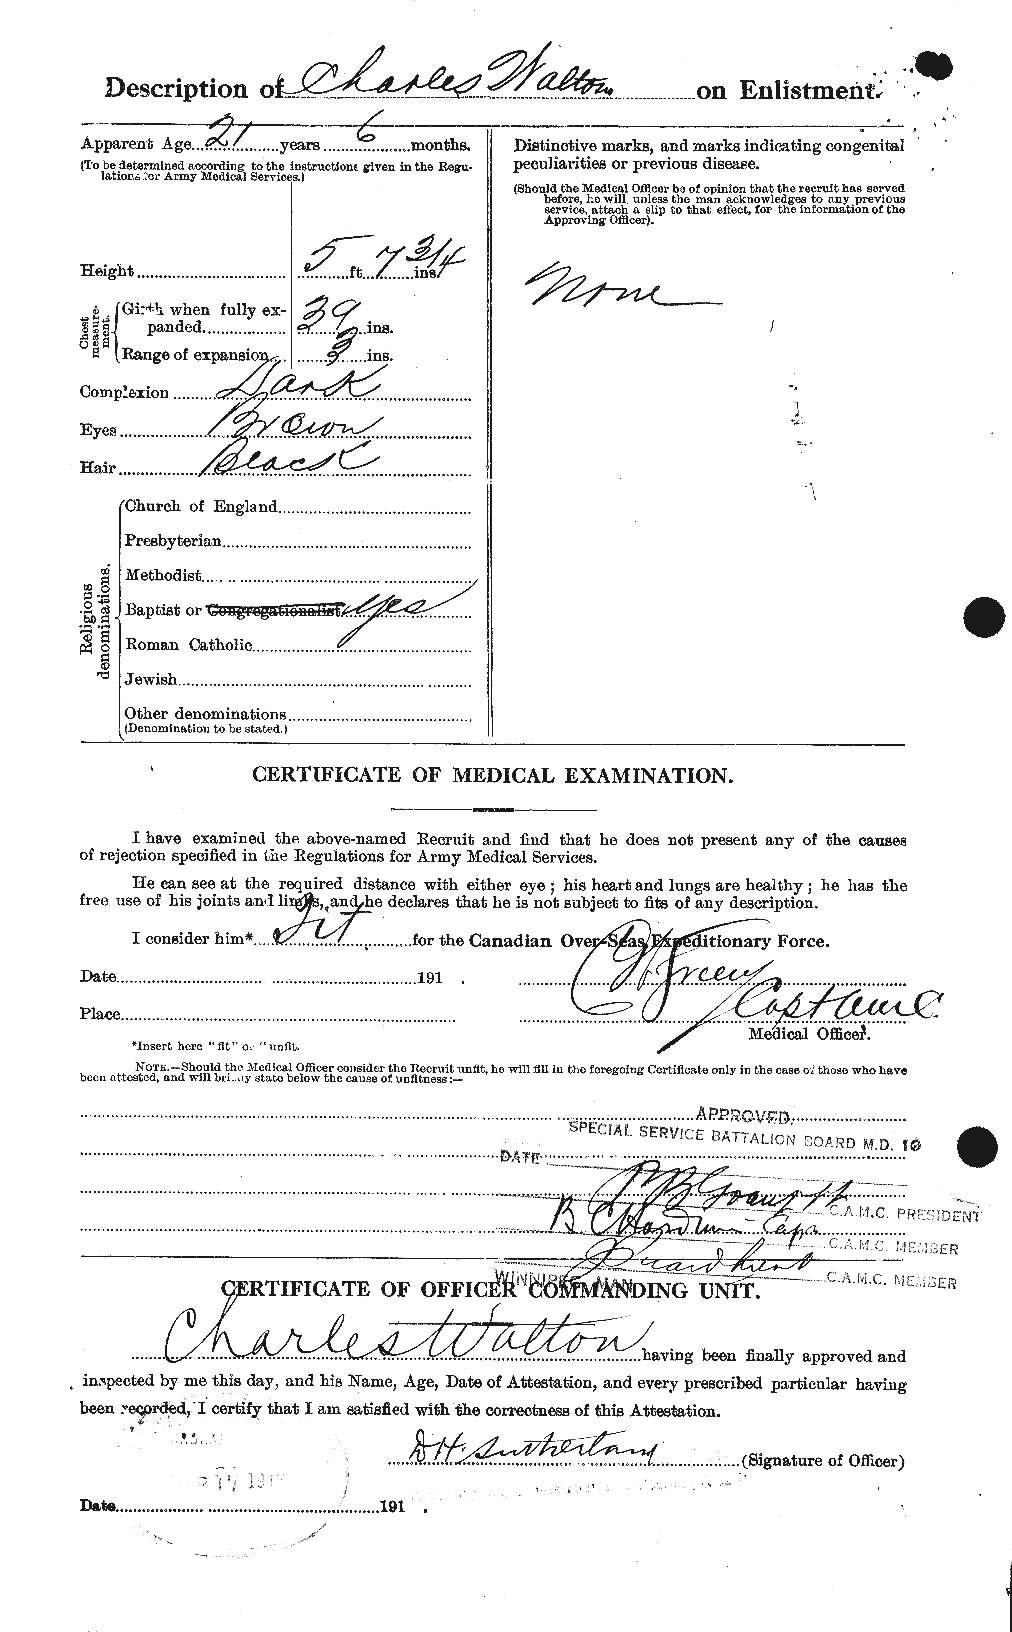 Dossiers du Personnel de la Première Guerre mondiale - CEC 655527b